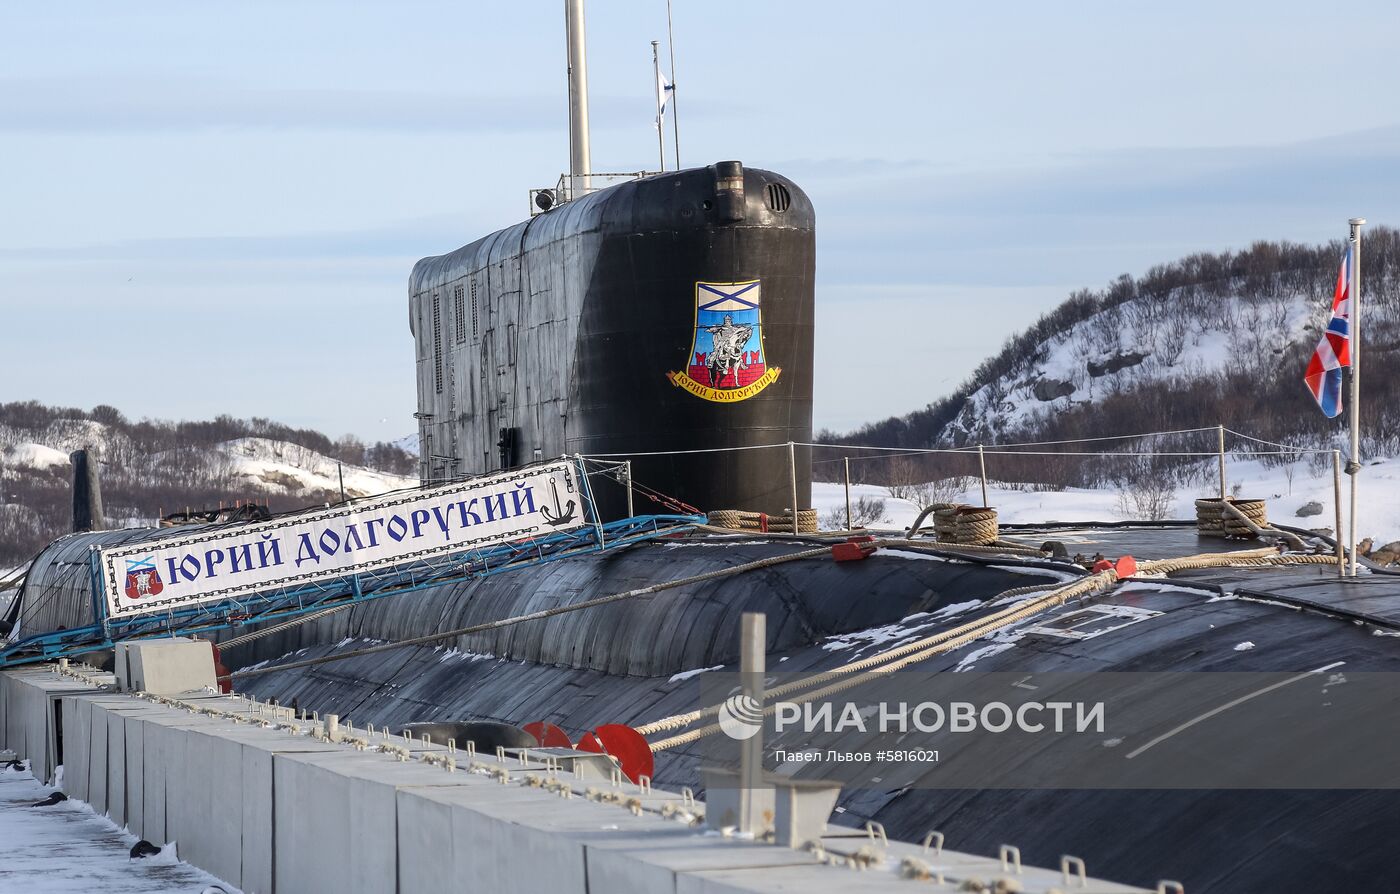 Подводная лодка "Юрий Долгорукий"